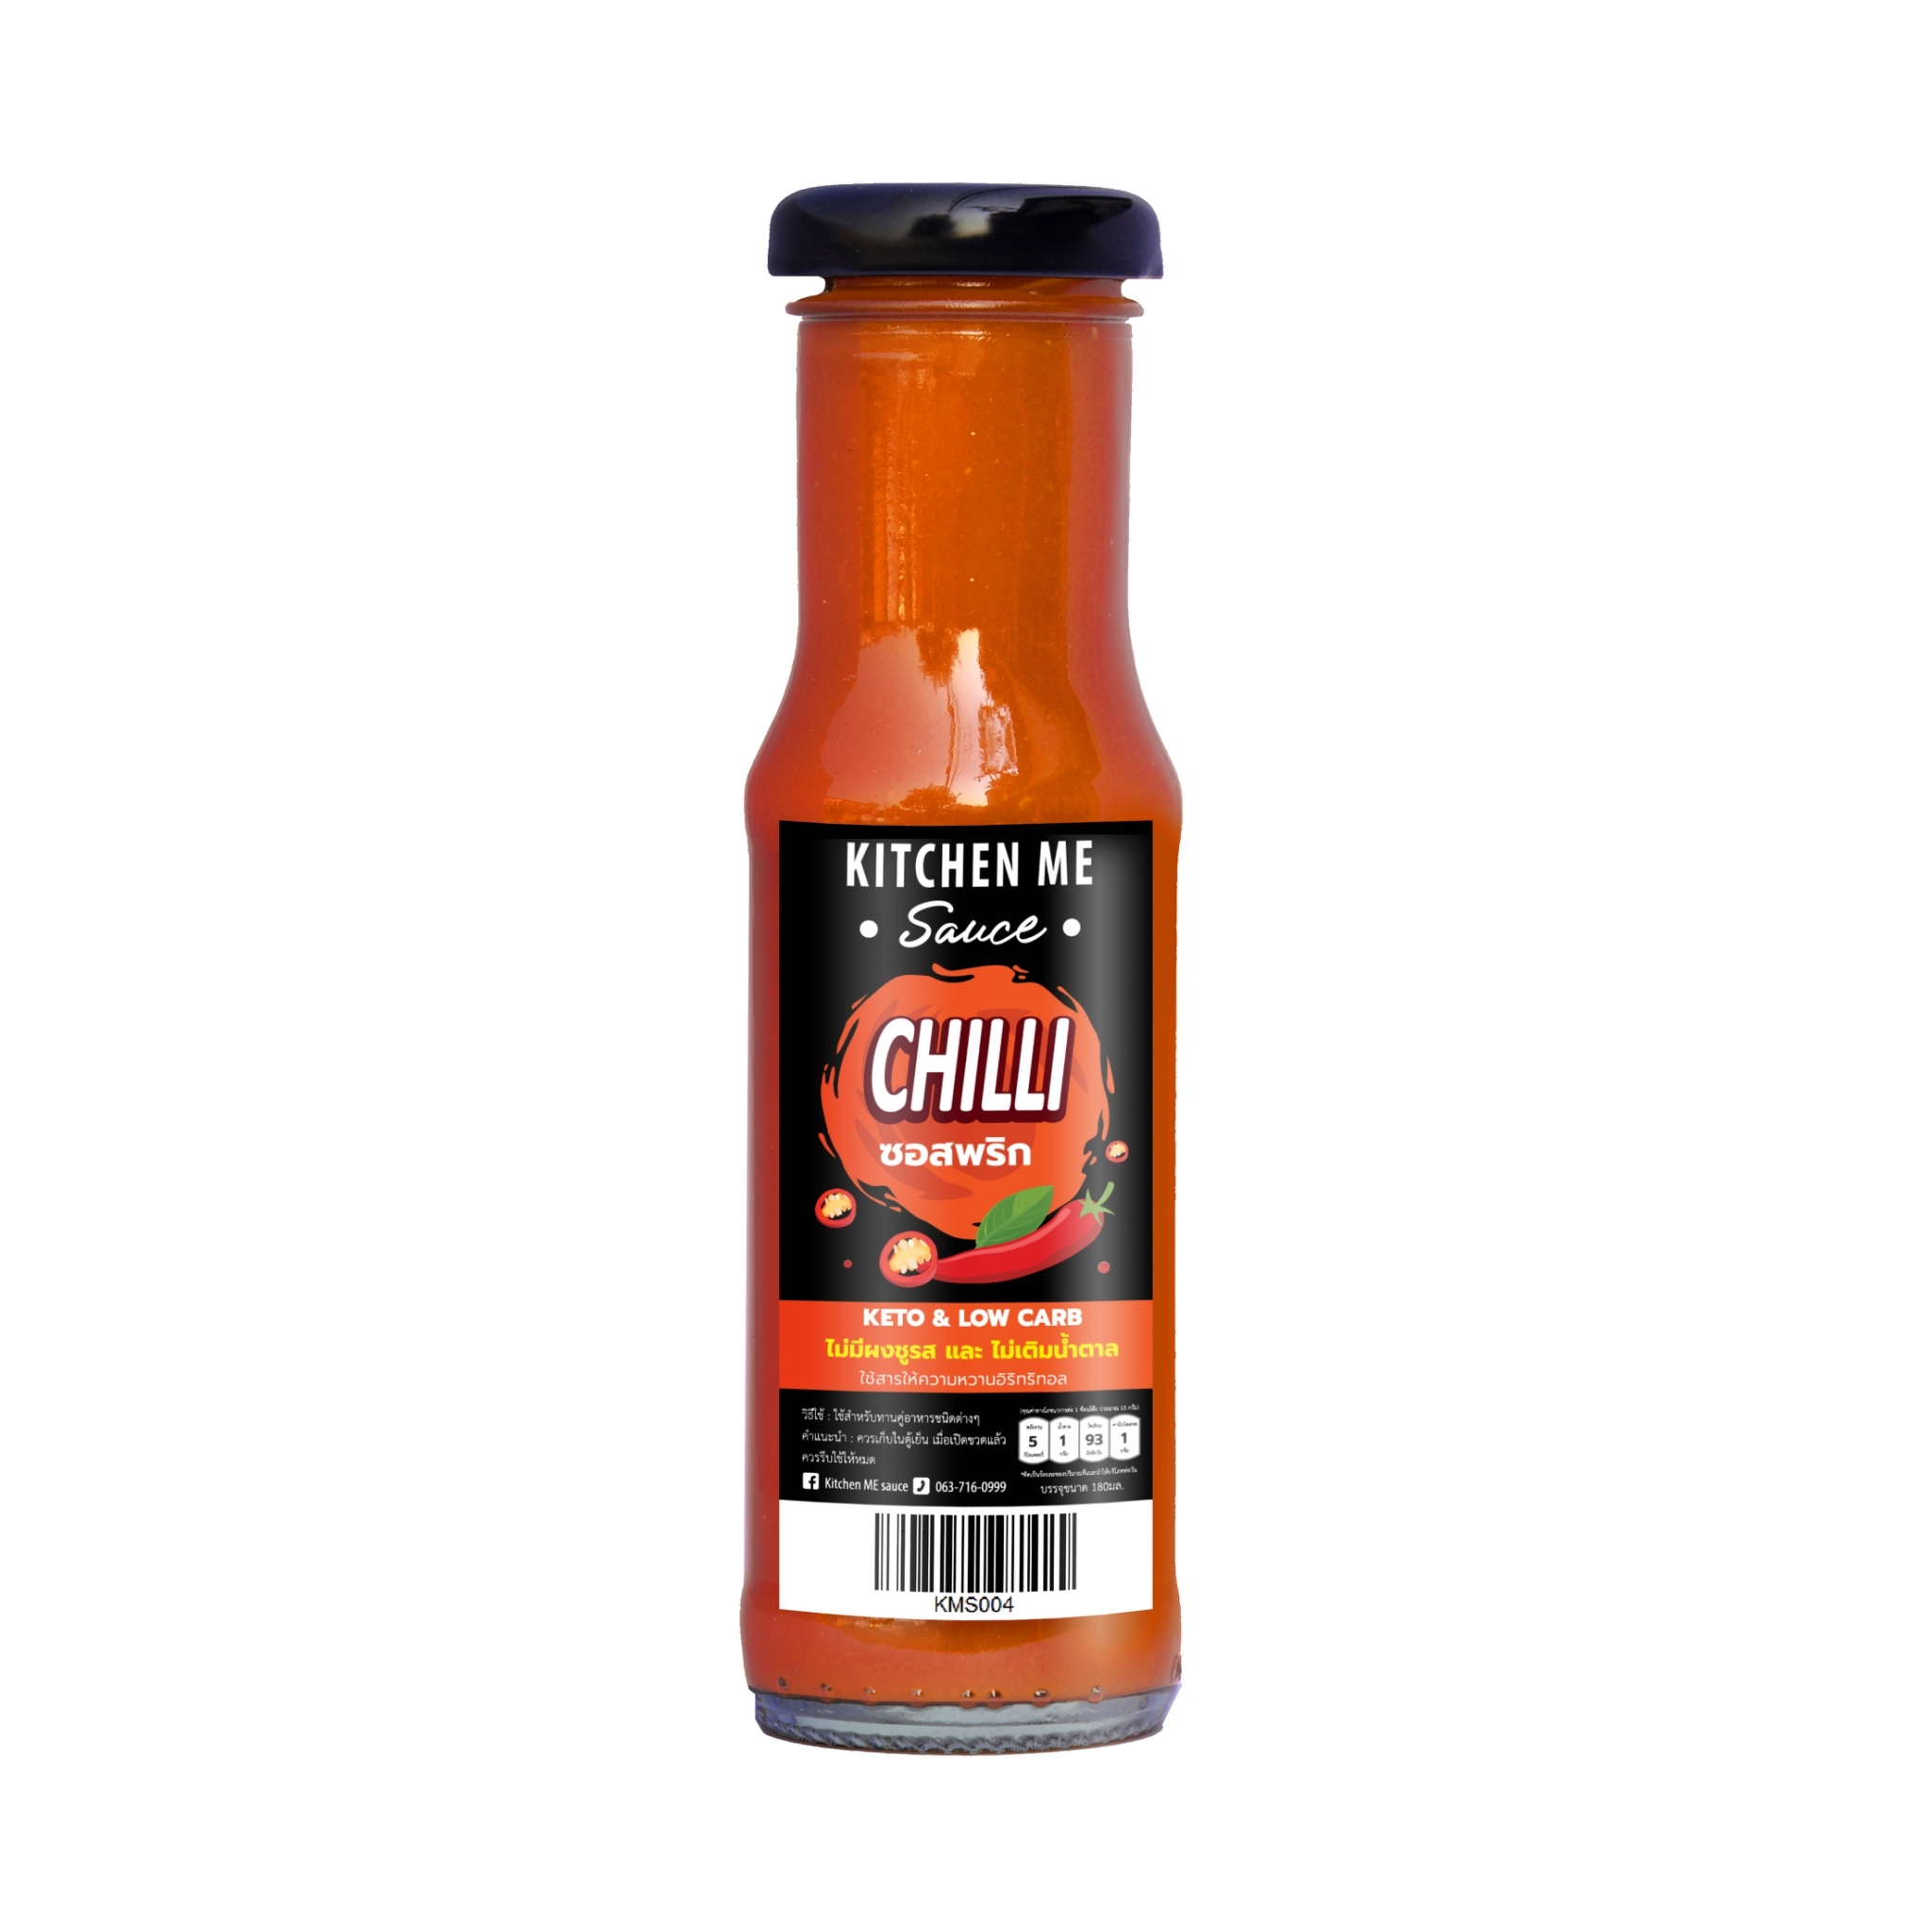 ซอสพริกคีโต Chilli sauce - Kitchen me sauce